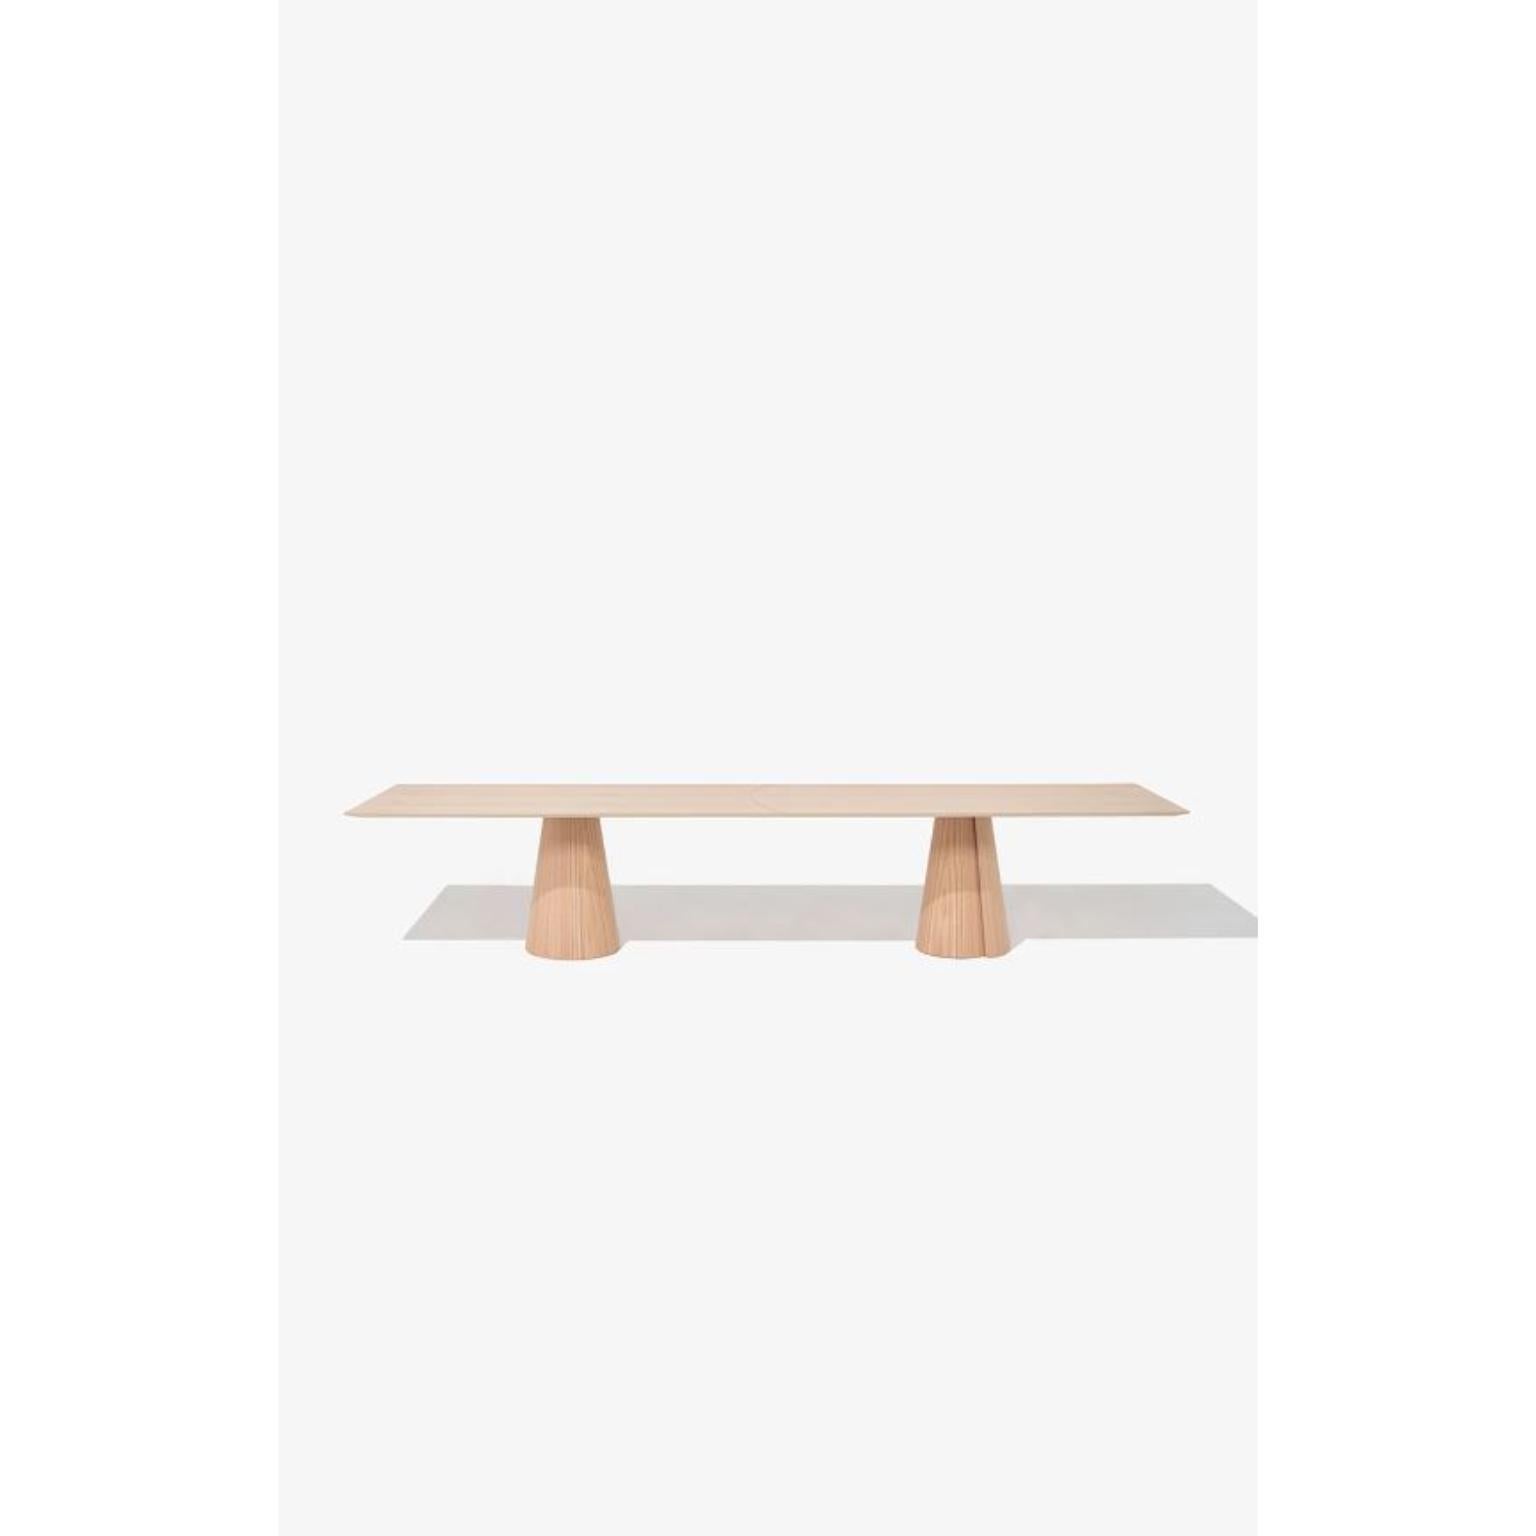 Table de salle à manger rectangulaire Volta 400 de Wentz
Dimensions : D 120 x L 400 x H 75 cm
Matériaux : Bois, contreplaqué, MDF, placage de bois naturel, acier.
Également disponible en différentes couleurs : Chêne, Noyer, Noir, Blanc, Vert